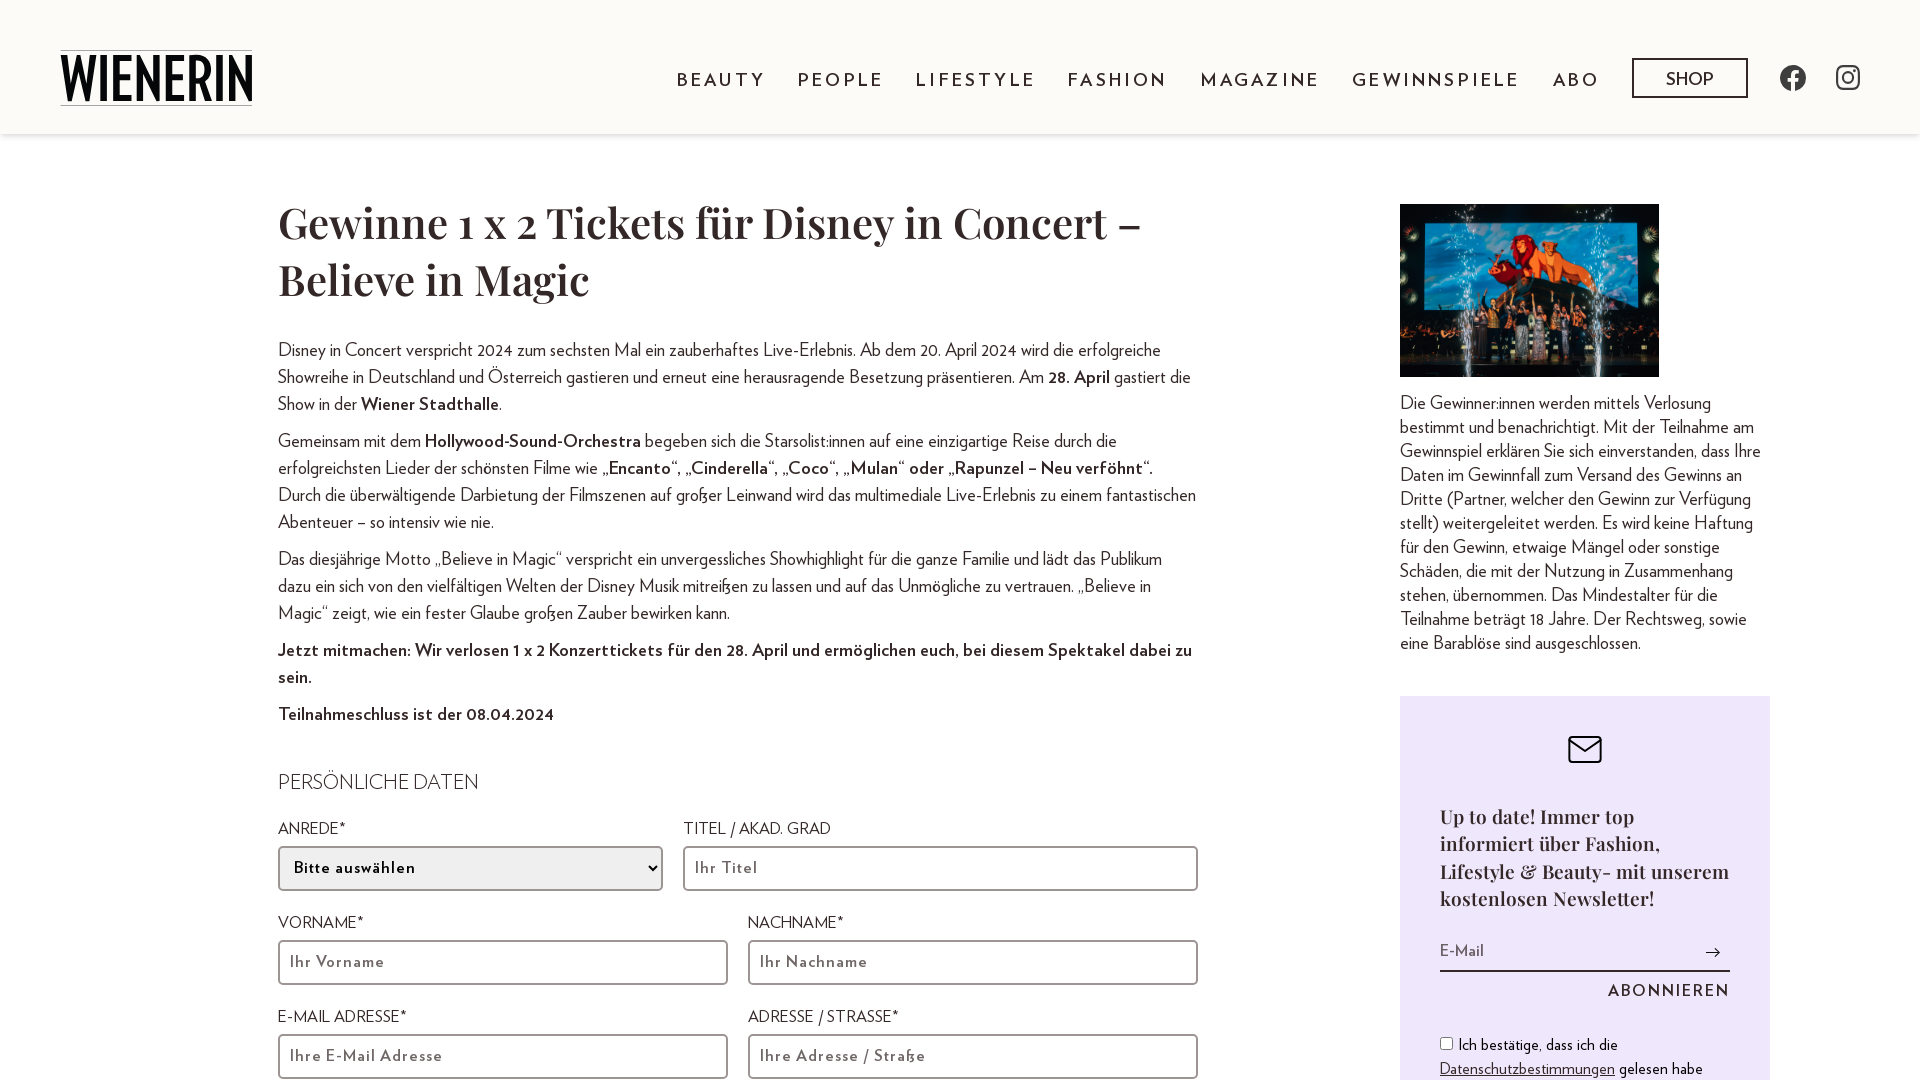 1 x 2 Tickets für Disney in Concert